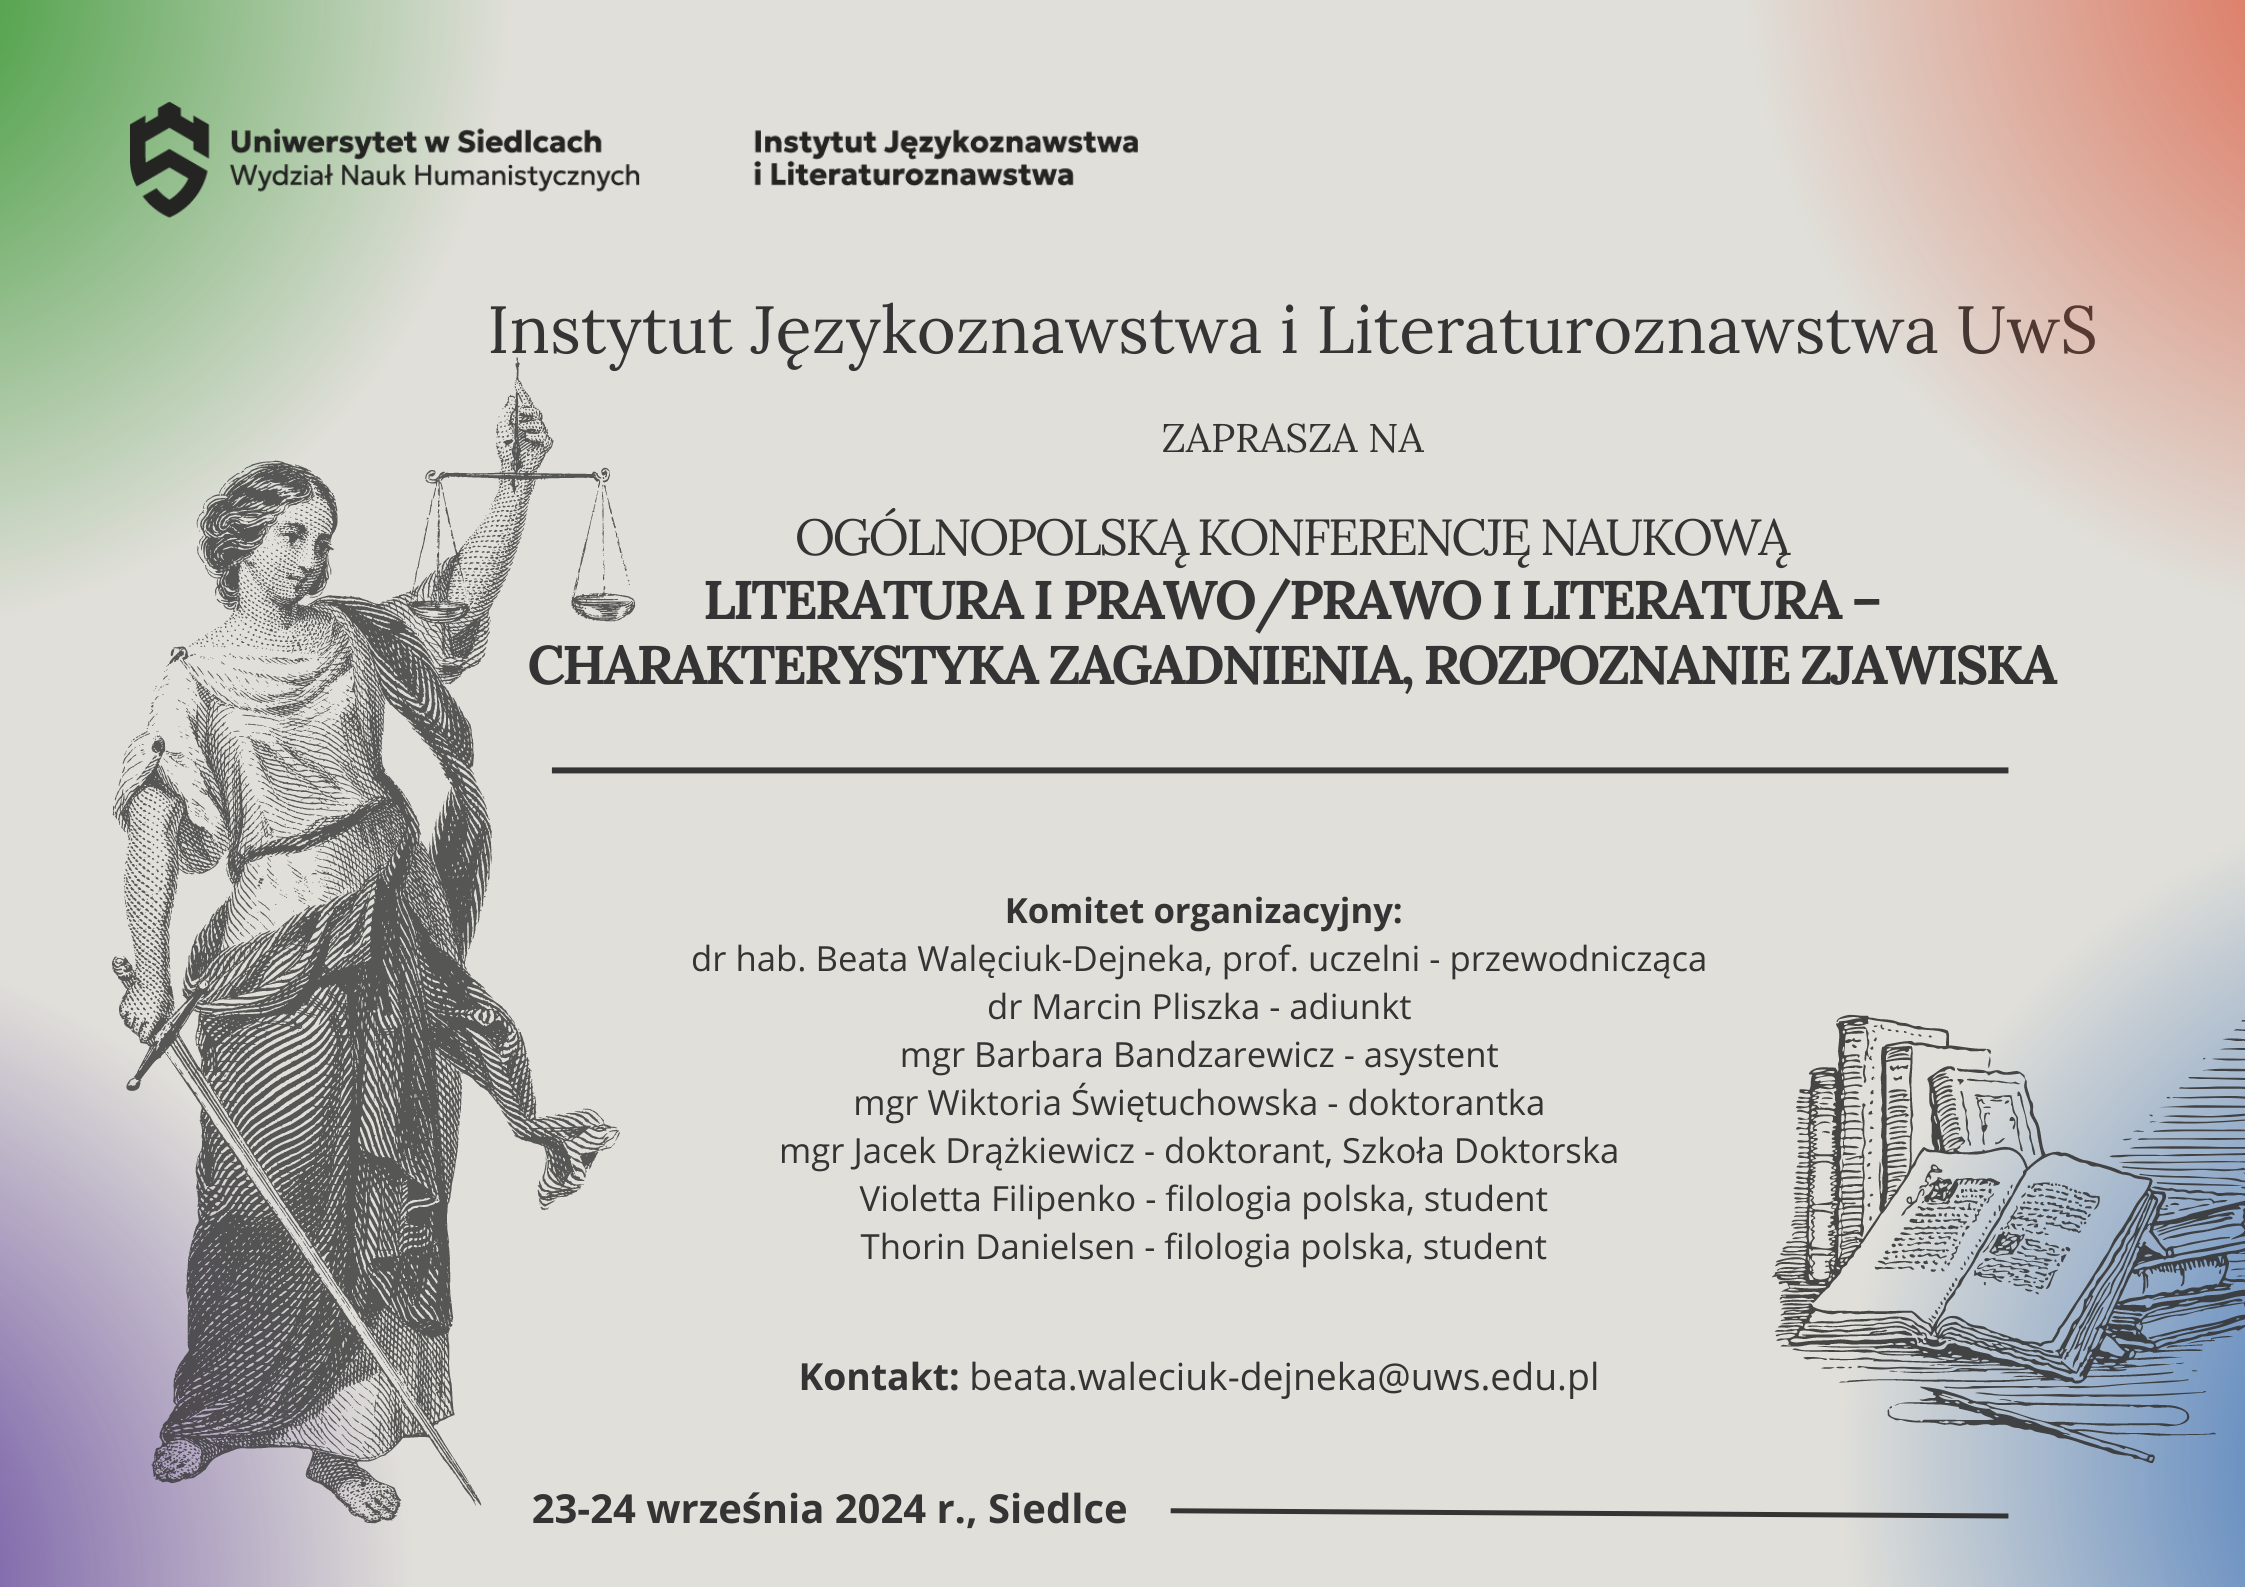 Ogólnopolska konferencja naukowa „Literatura i prawo/prawo i literatura – charakterystyka zagadnienia, rozpoznanie zjawiska – plakat